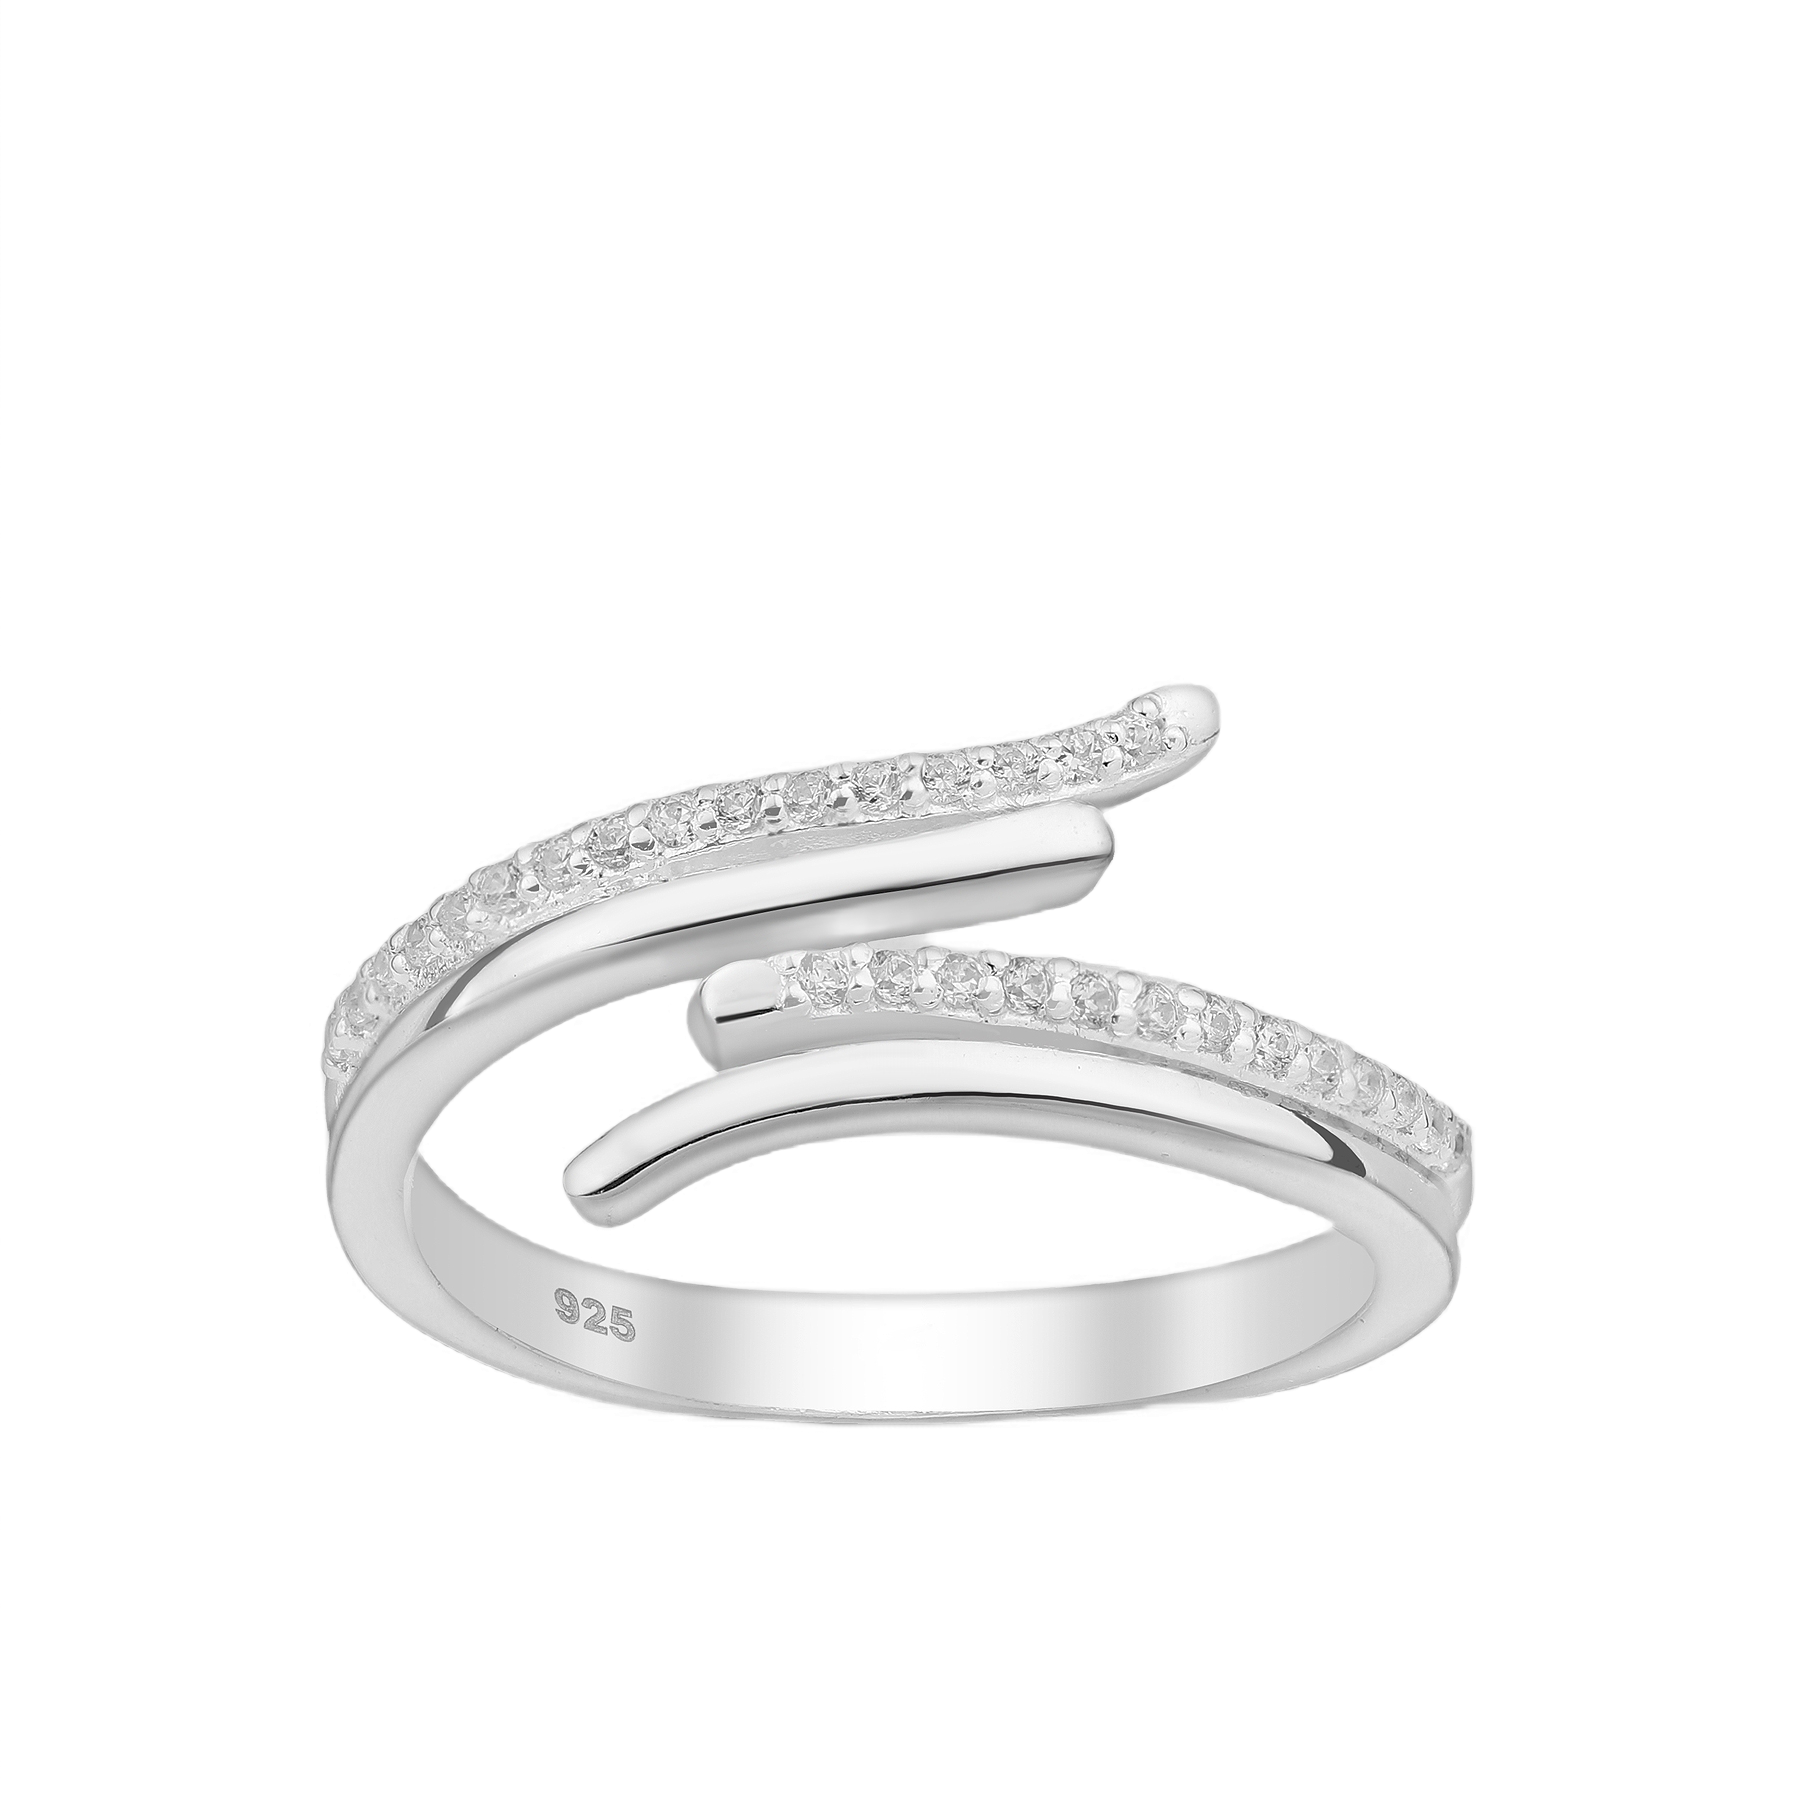 Silver Cubic Zirconia Adjustable Ring